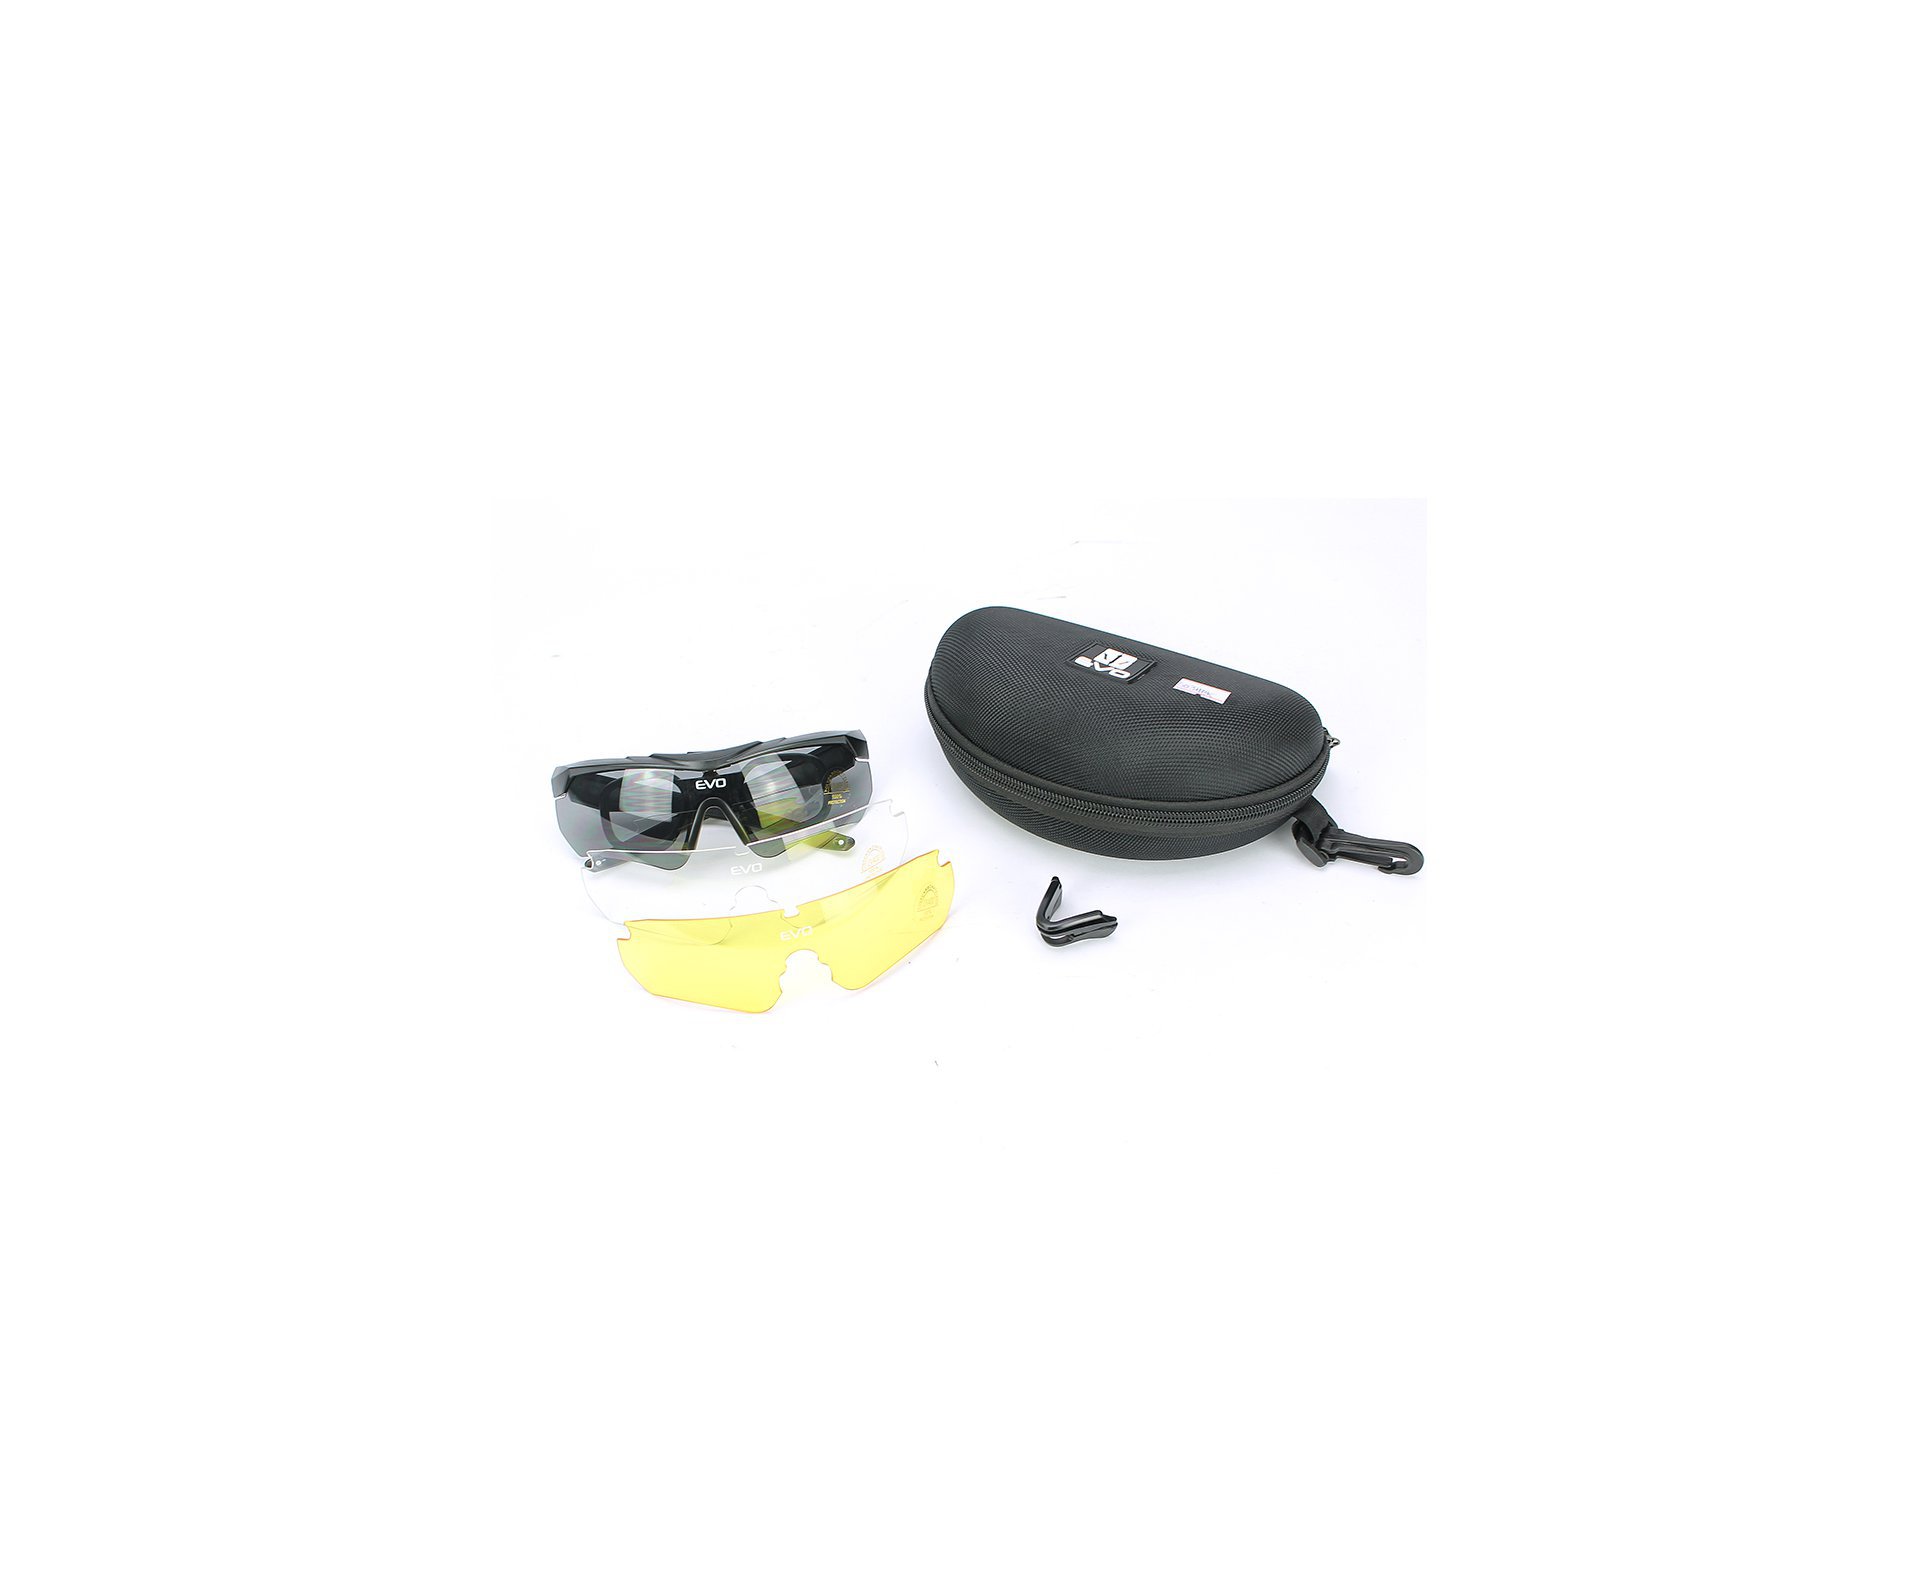 Oculos De Proteção De Tiro G034bk Kit 3 Lentes Sport Glasses - Evo Tactical